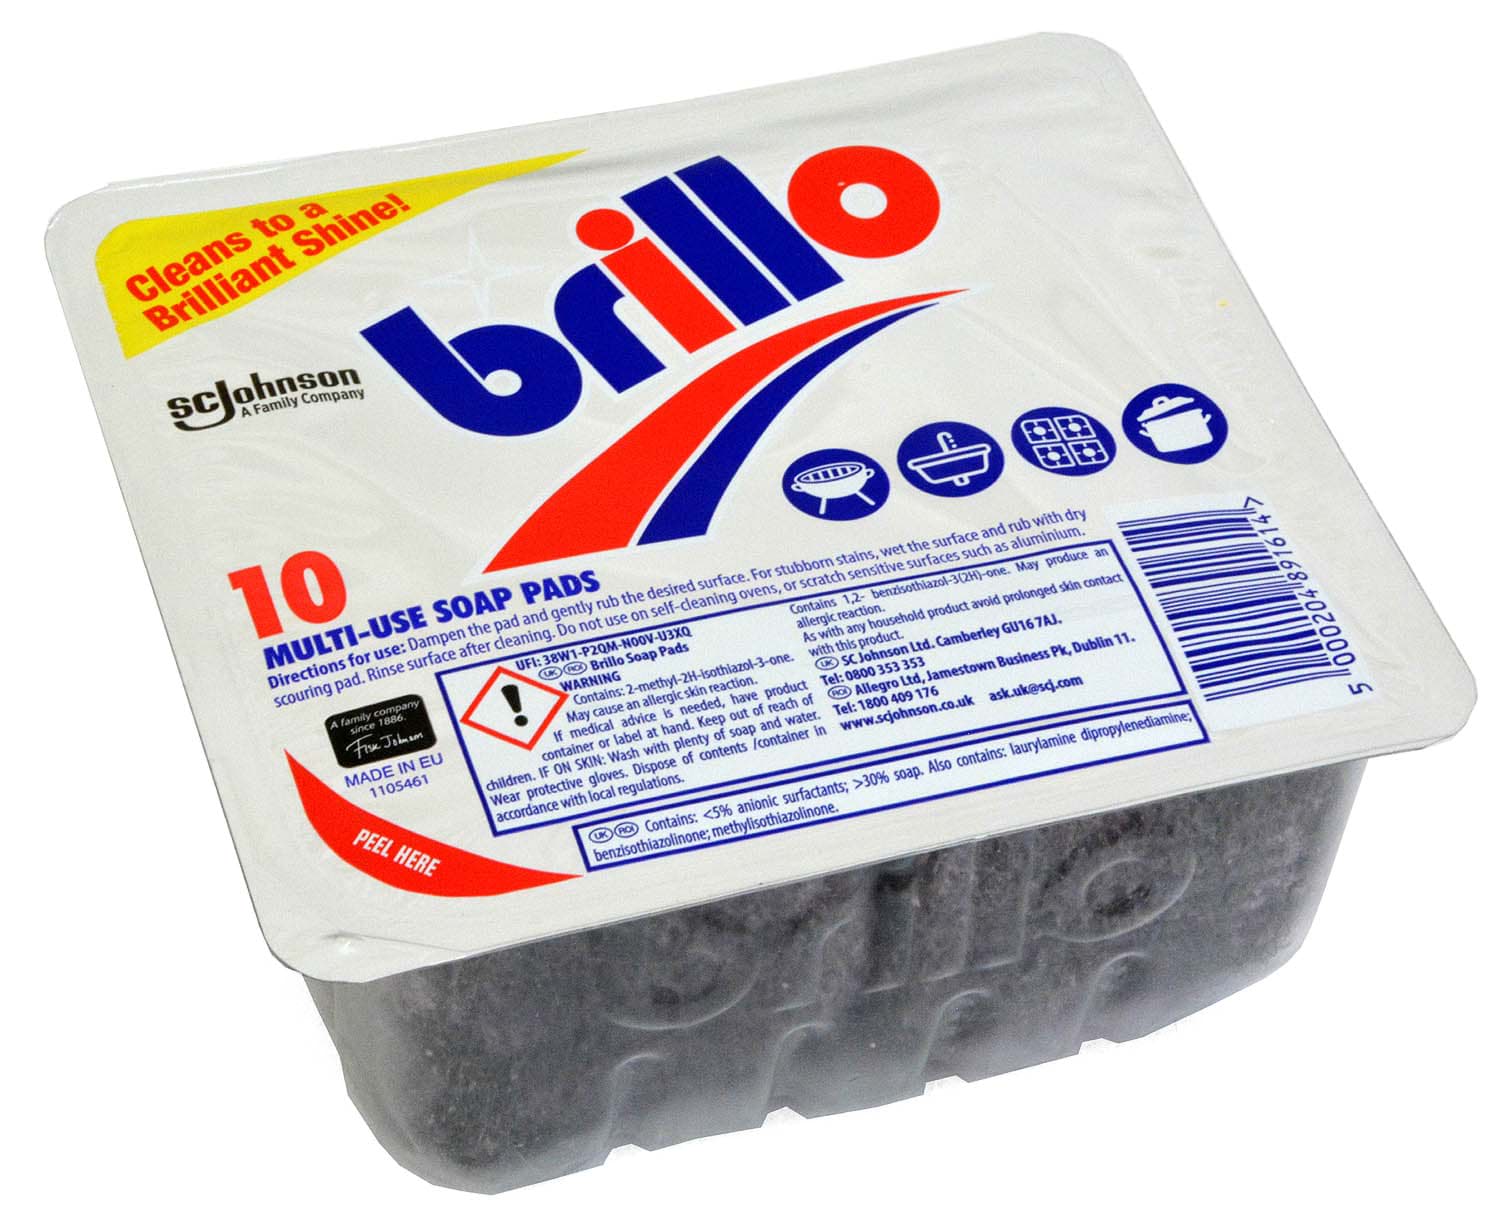 Picture of Brillo 10 Multi-Use Soap Pads